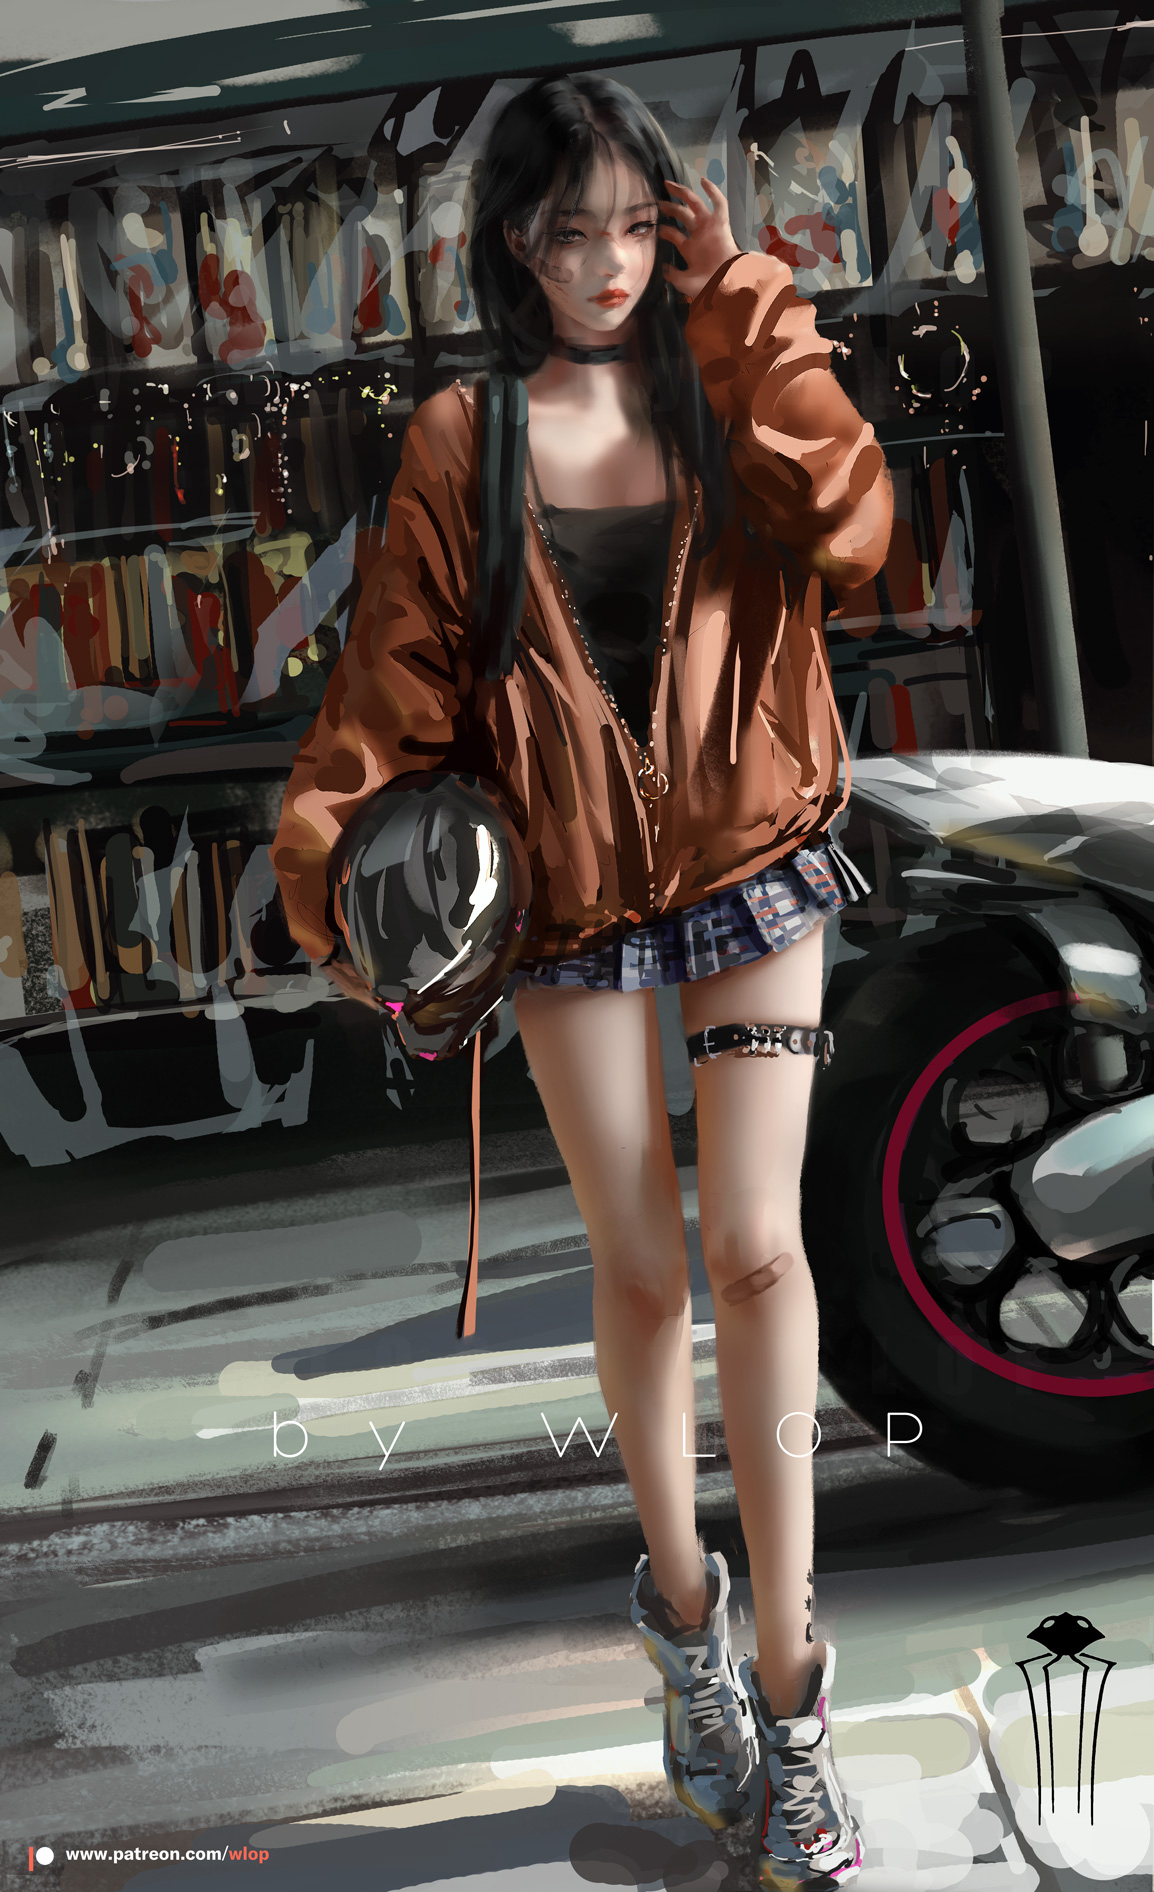 Digital Art Women Motobike WLOP 1154x1892